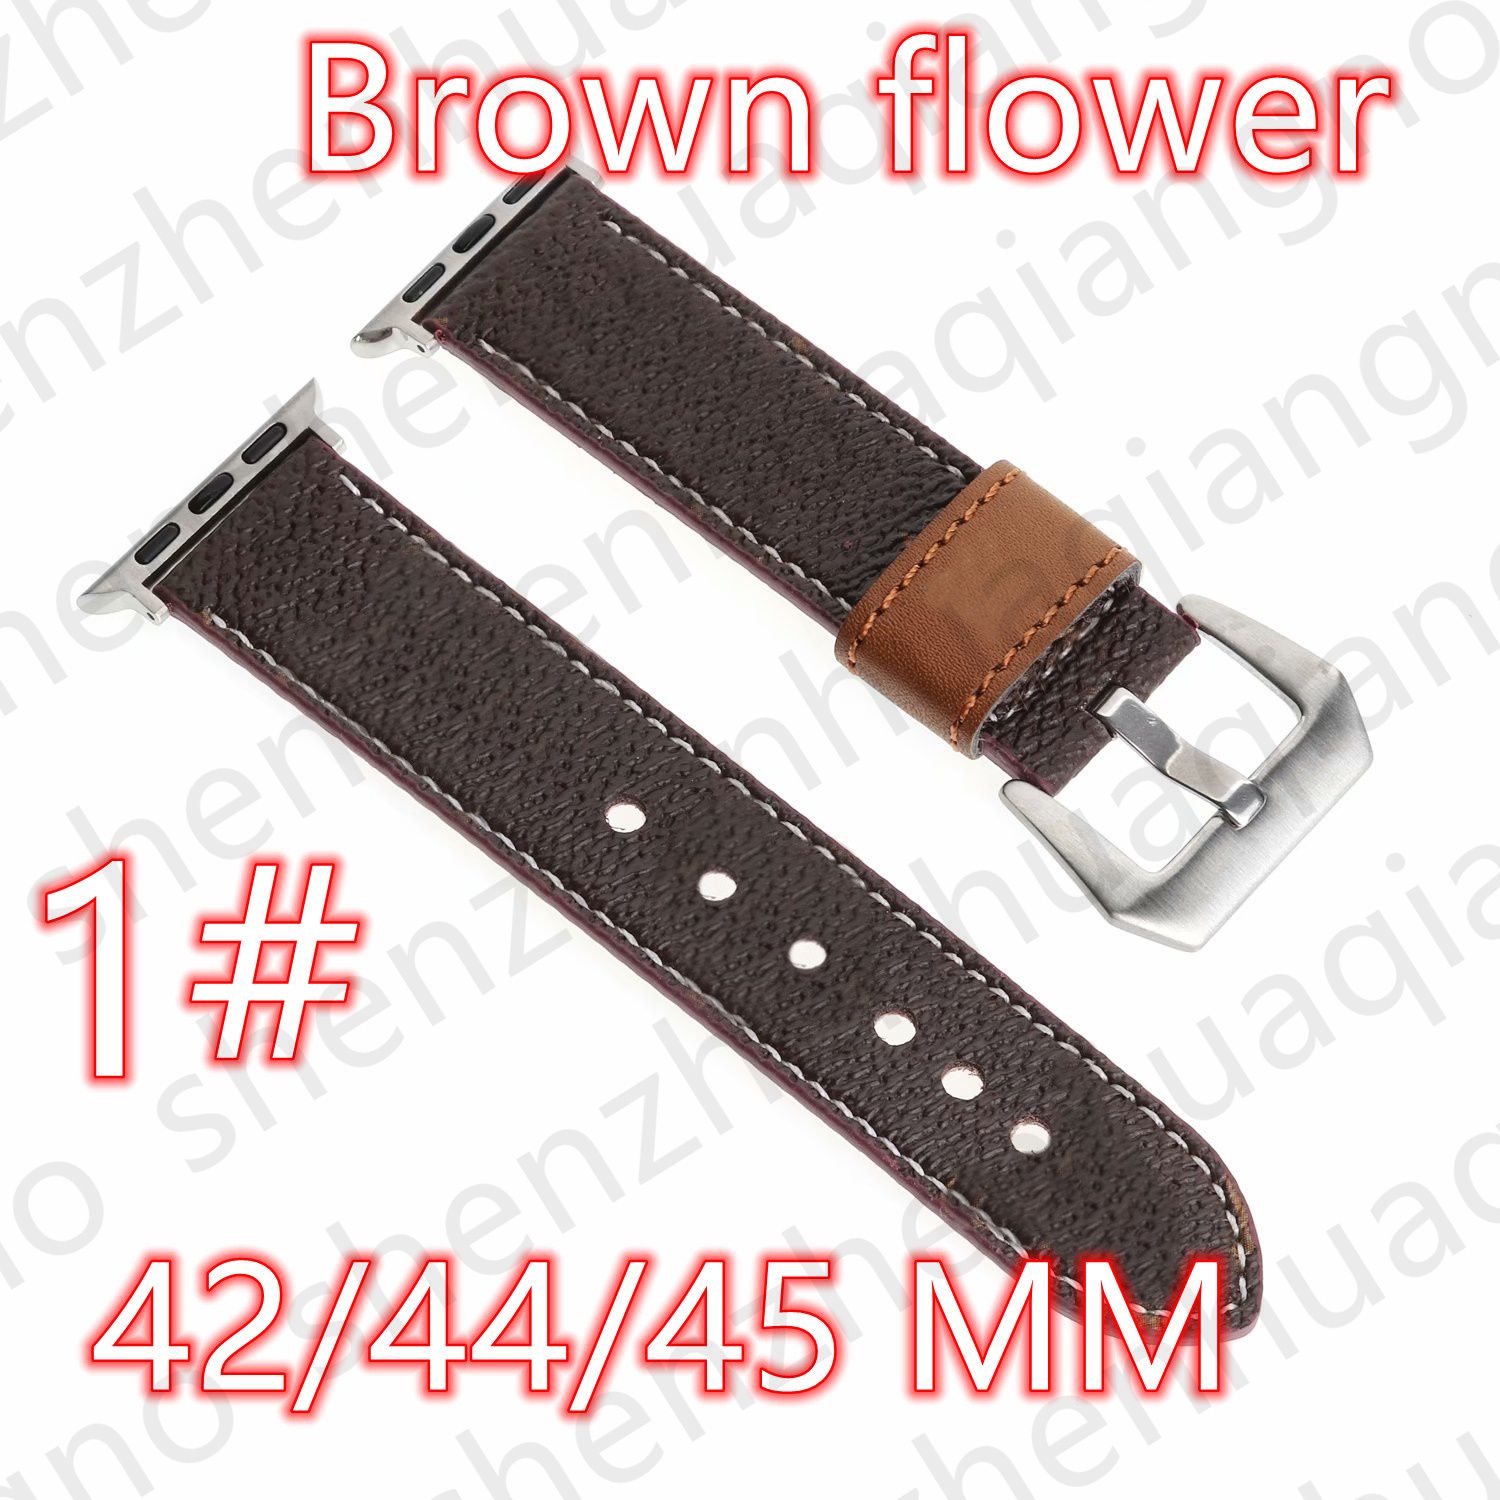 1#42/44/45/49mm Brown Flower V -logotyp